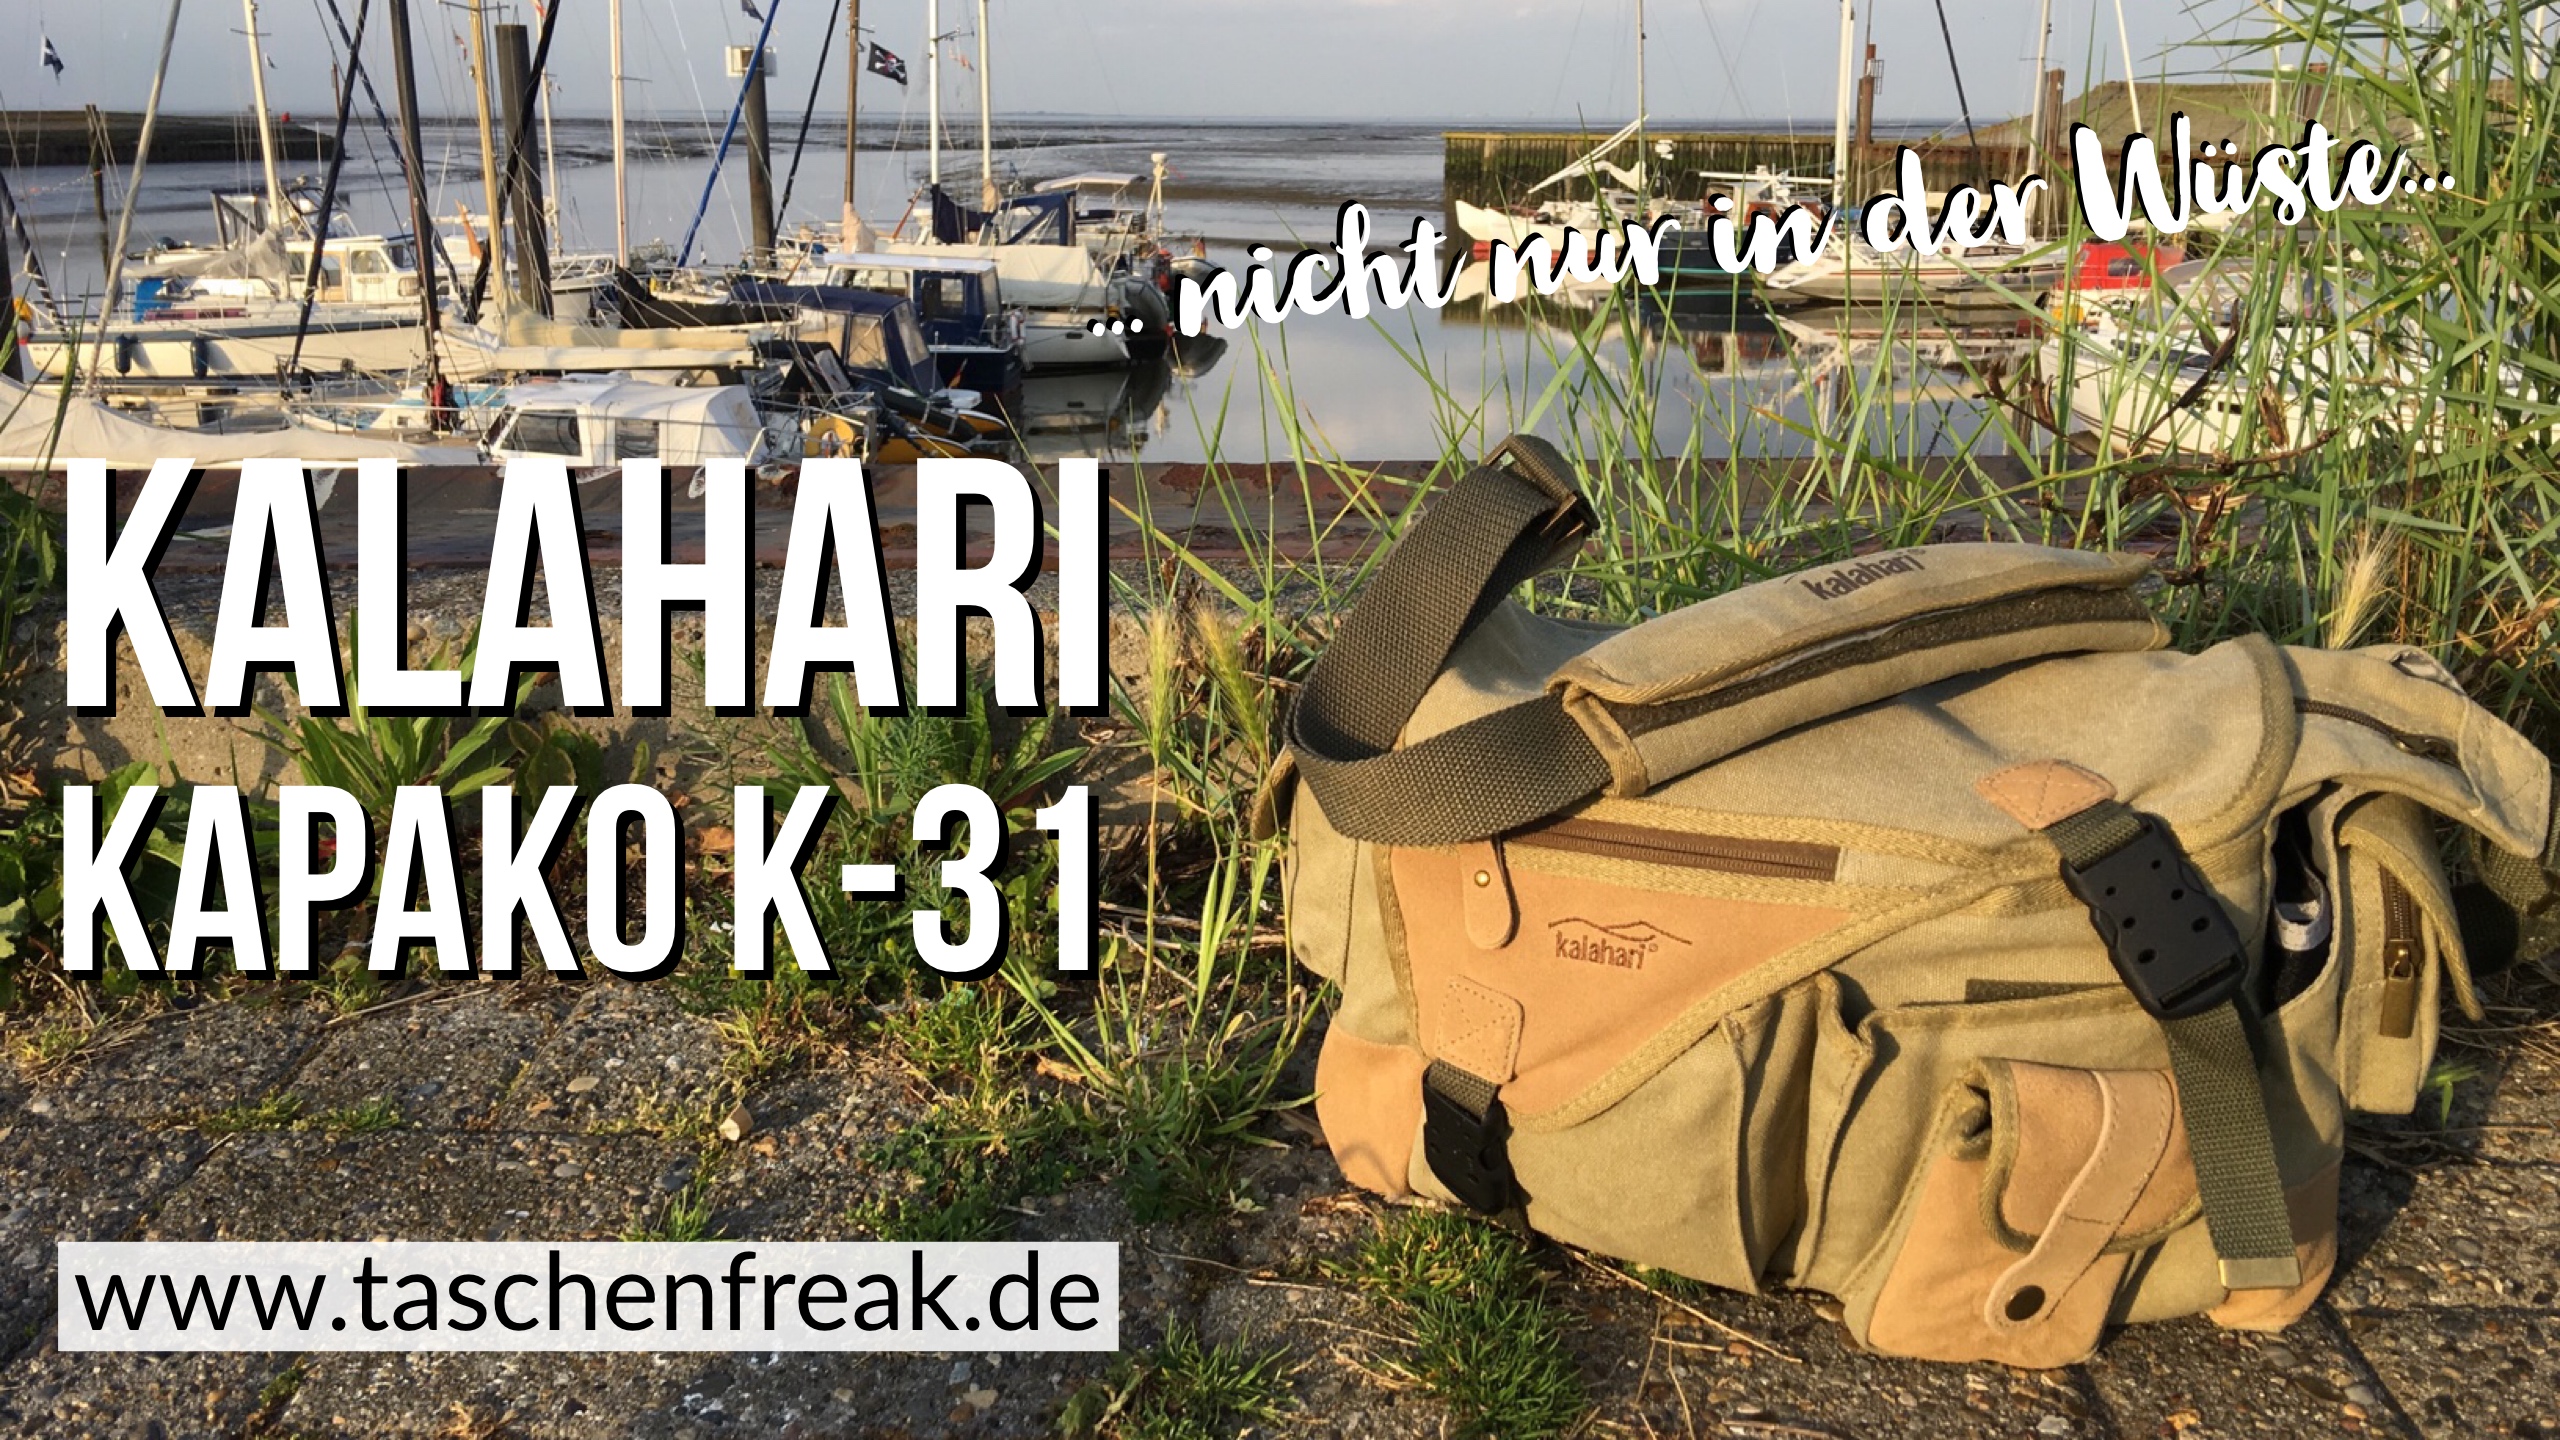 Ein echtes Packwunder – die kalahari KAPAKO K-31 – nicht nur für die Wüste geeignet!